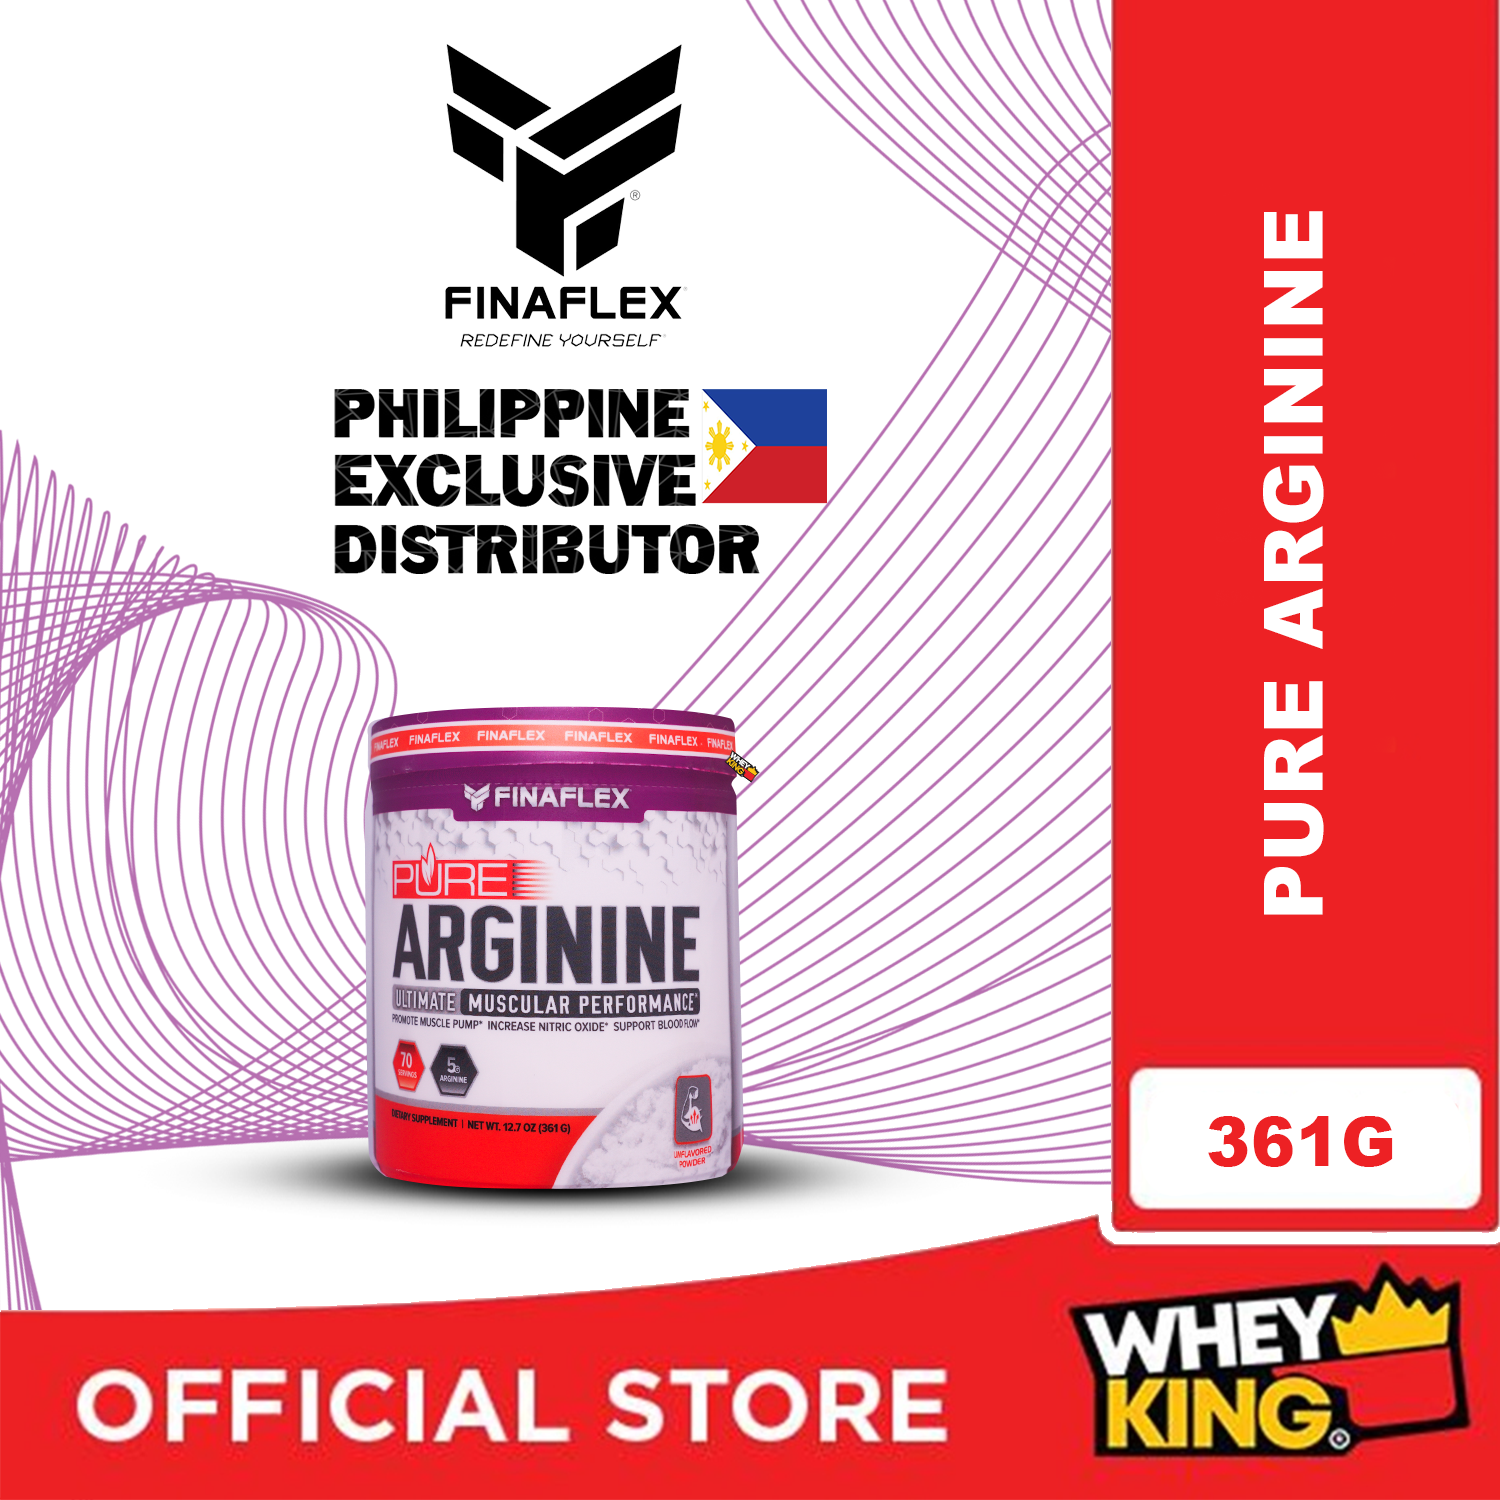 Finaflex Pure Arginine Ultimate Muscular Performance - 361g